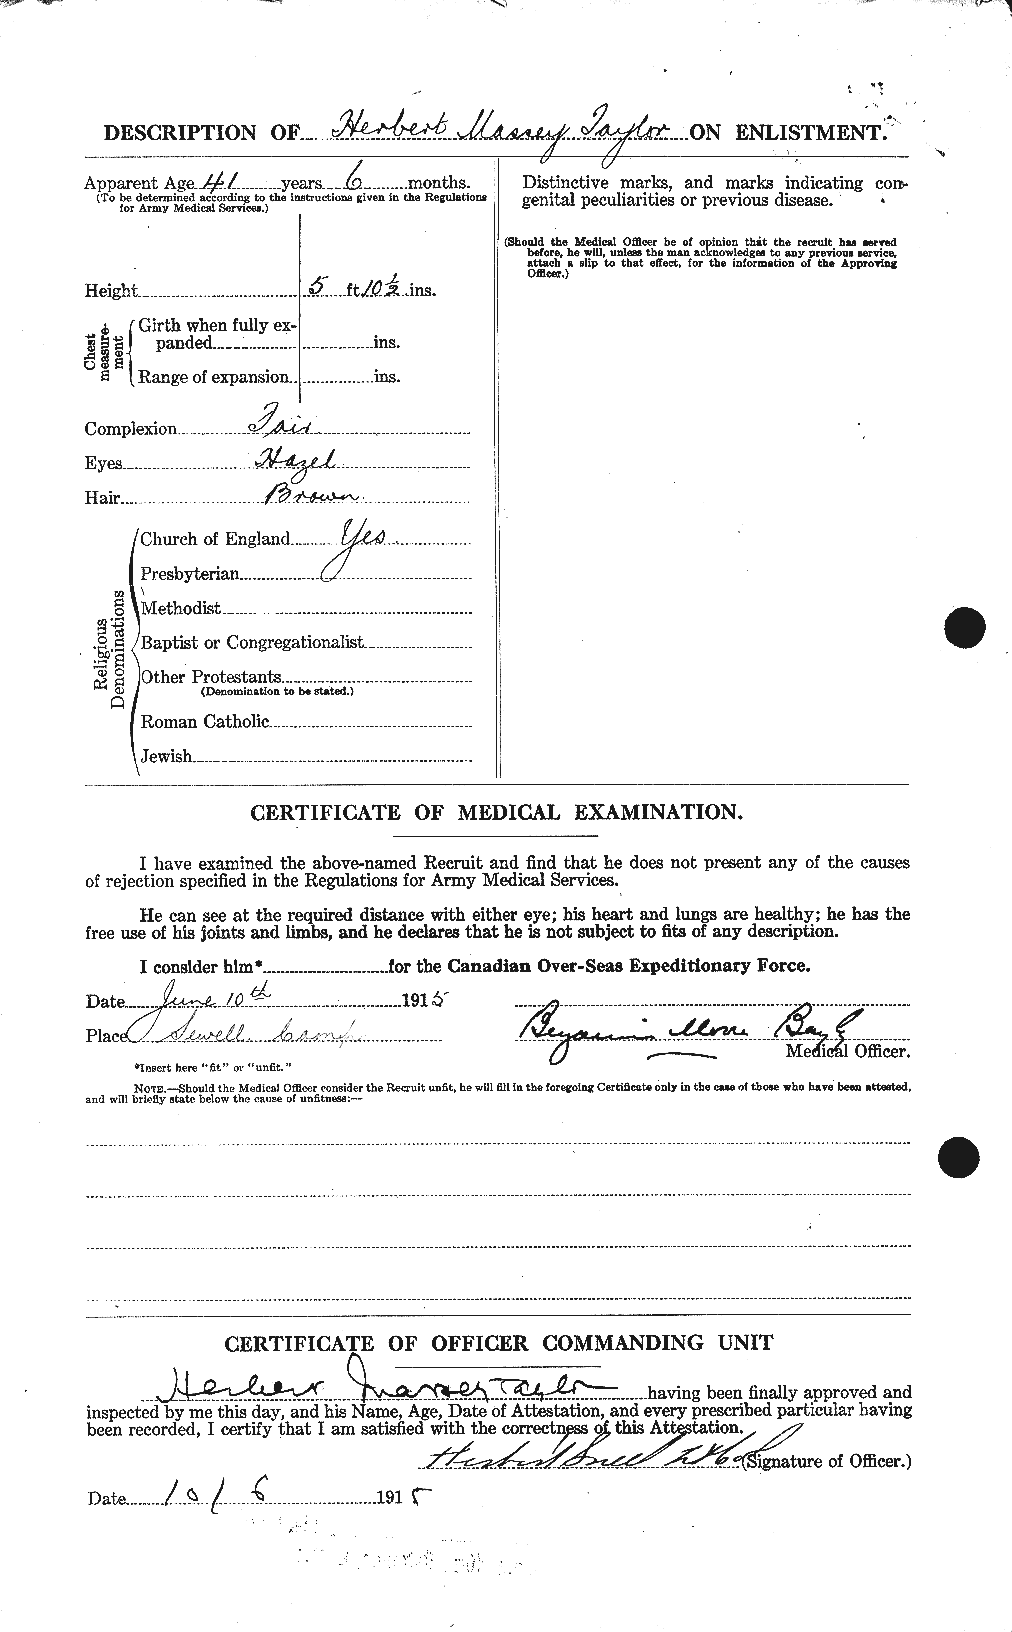 Dossiers du Personnel de la Première Guerre mondiale - CEC 626574b